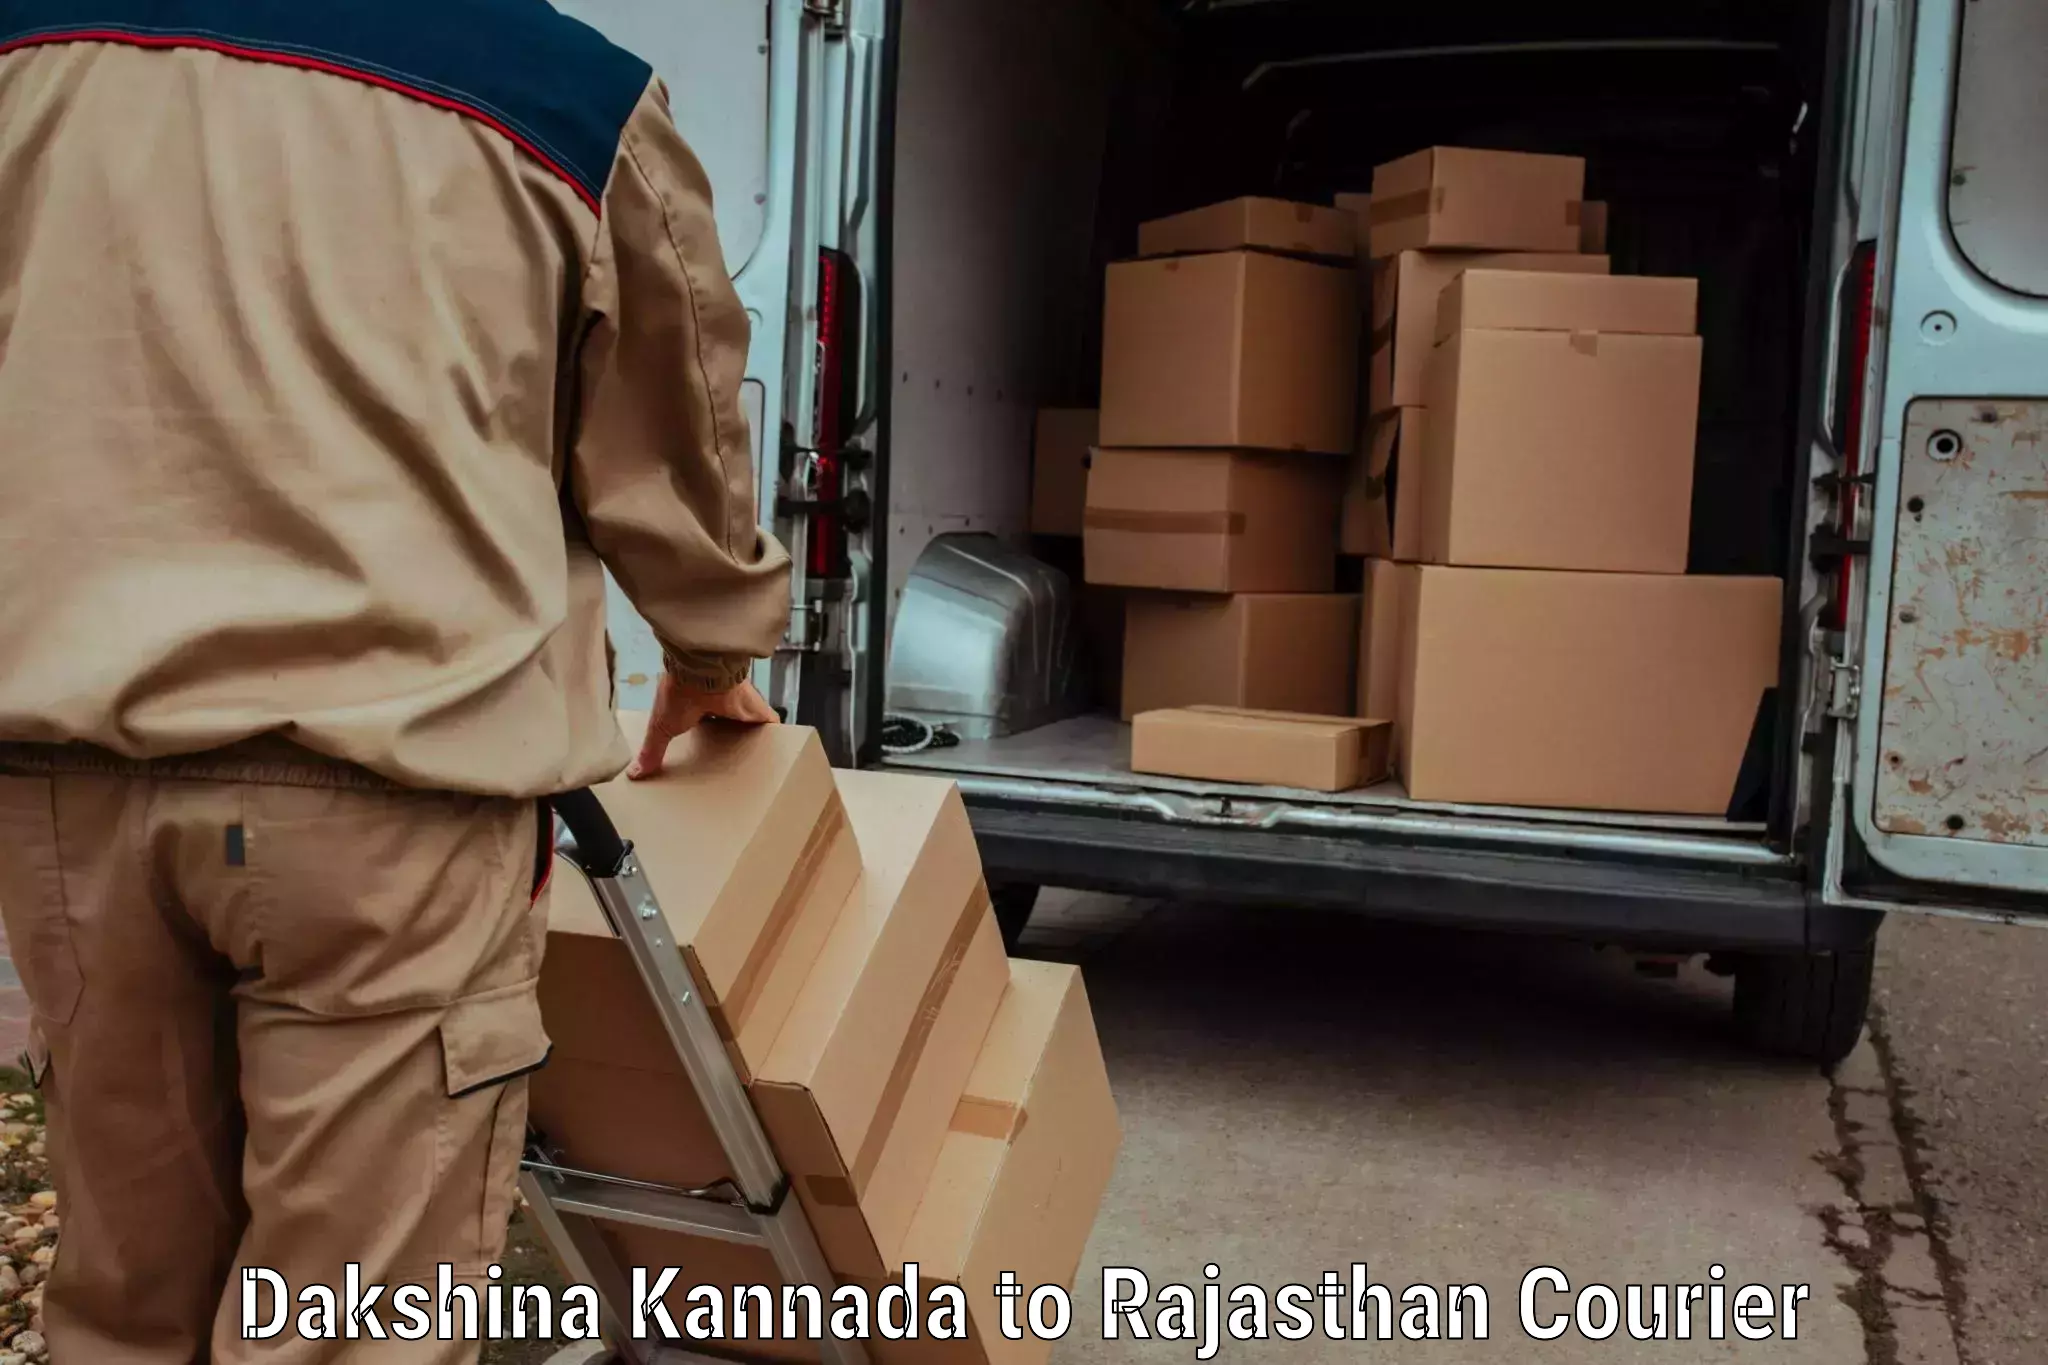 Premium courier services Dakshina Kannada to Suratgarh